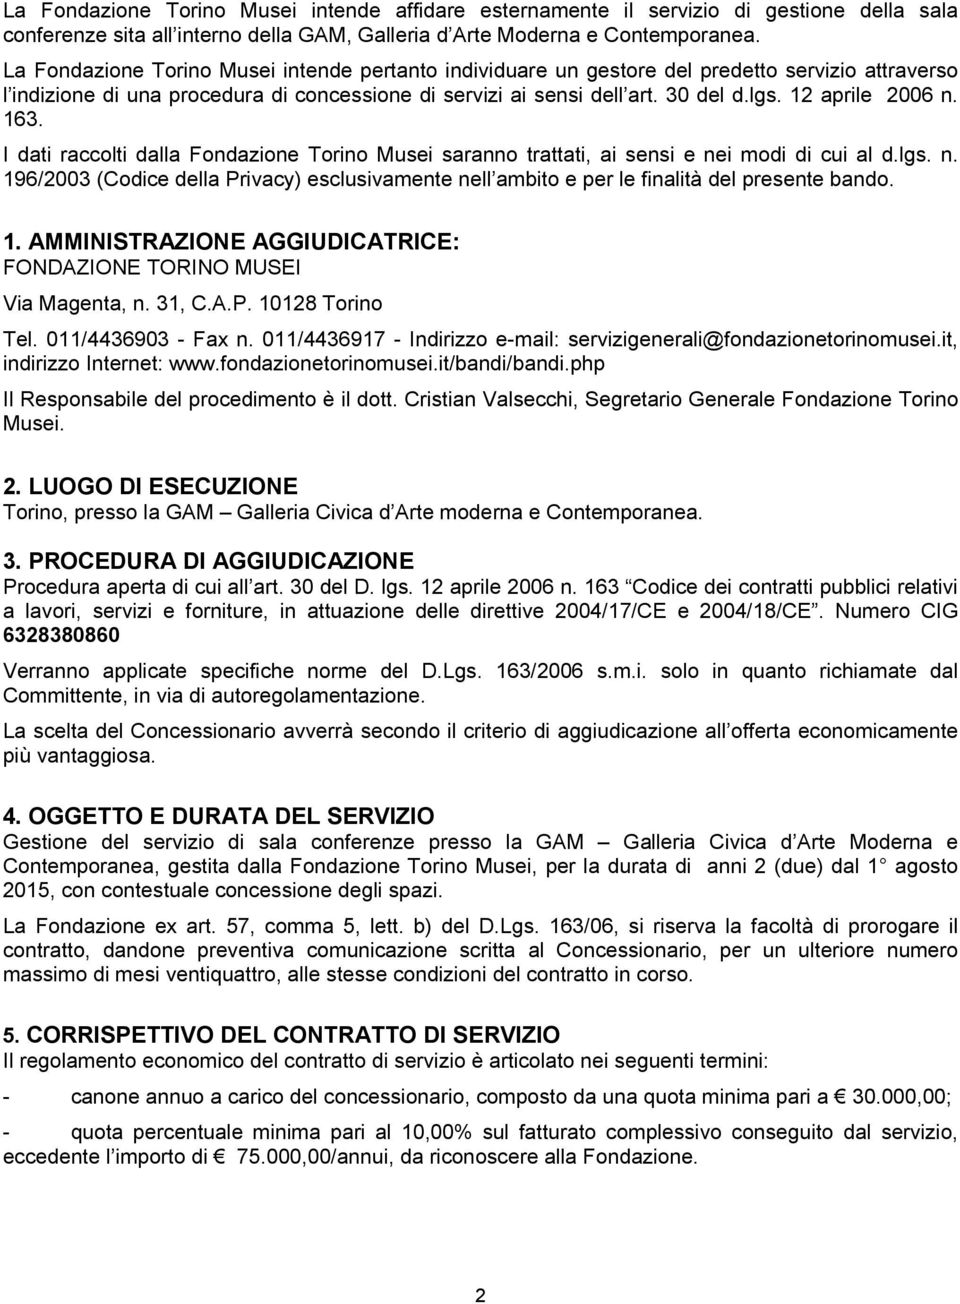 12 aprile 2006 n. 163. I dati raccolti dalla Fondazione Torino Musei saranno trattati, ai sensi e nei modi di cui al d.lgs. n. 196/2003 (Codice della Privacy) esclusivamente nell ambito e per le finalità del presente bando.